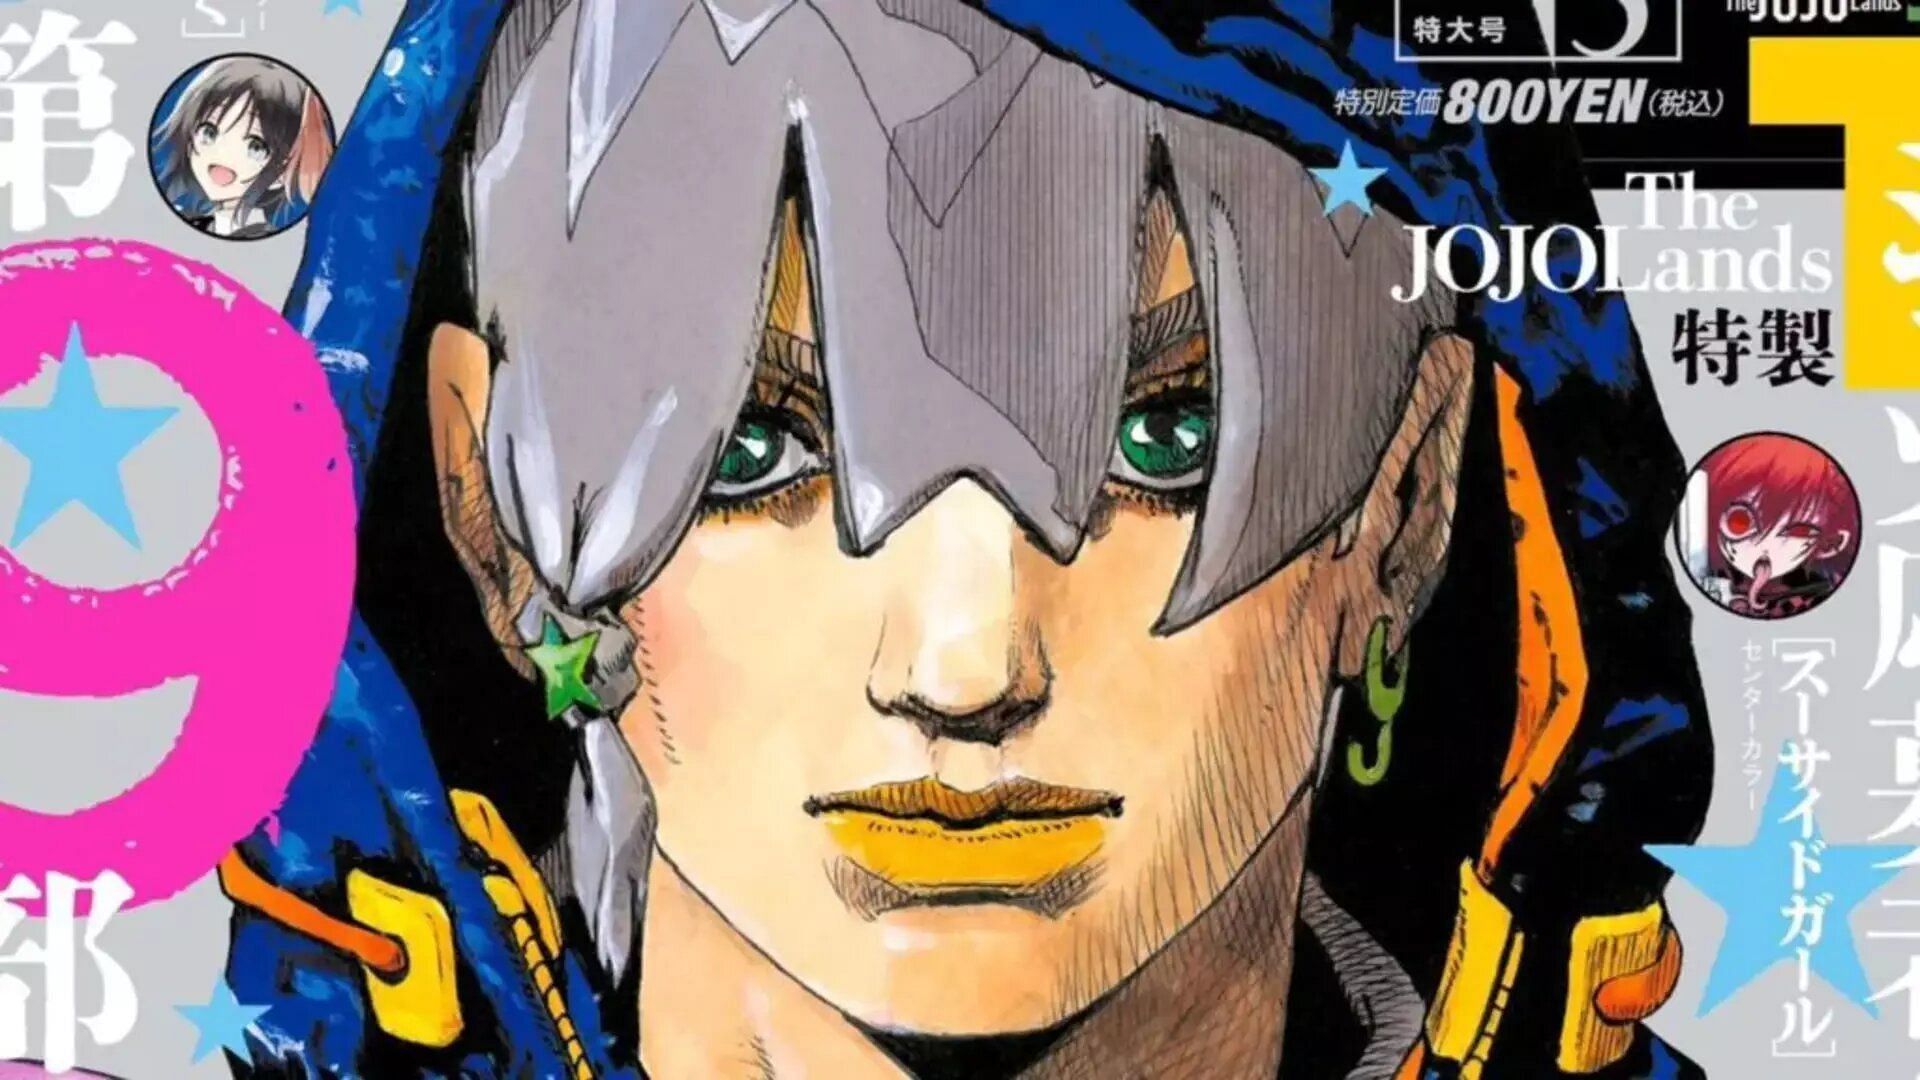 JoJo References In Anime And Manga VS Original JoJo Material